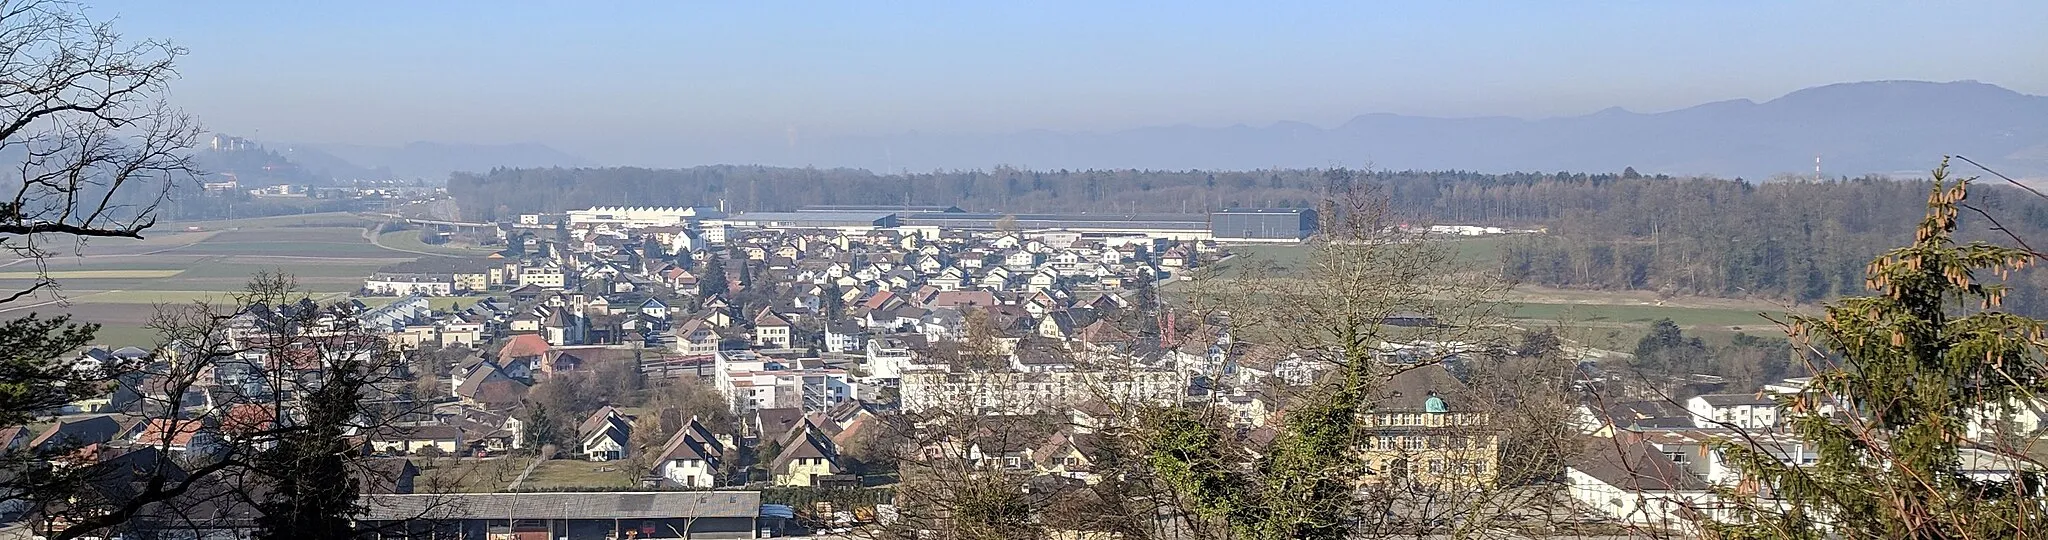 Photo showing: Othmarsingen vom Felskopf aus gesehen, der nördliche Teil des Dorfes ist dabei nicht zu sehen.